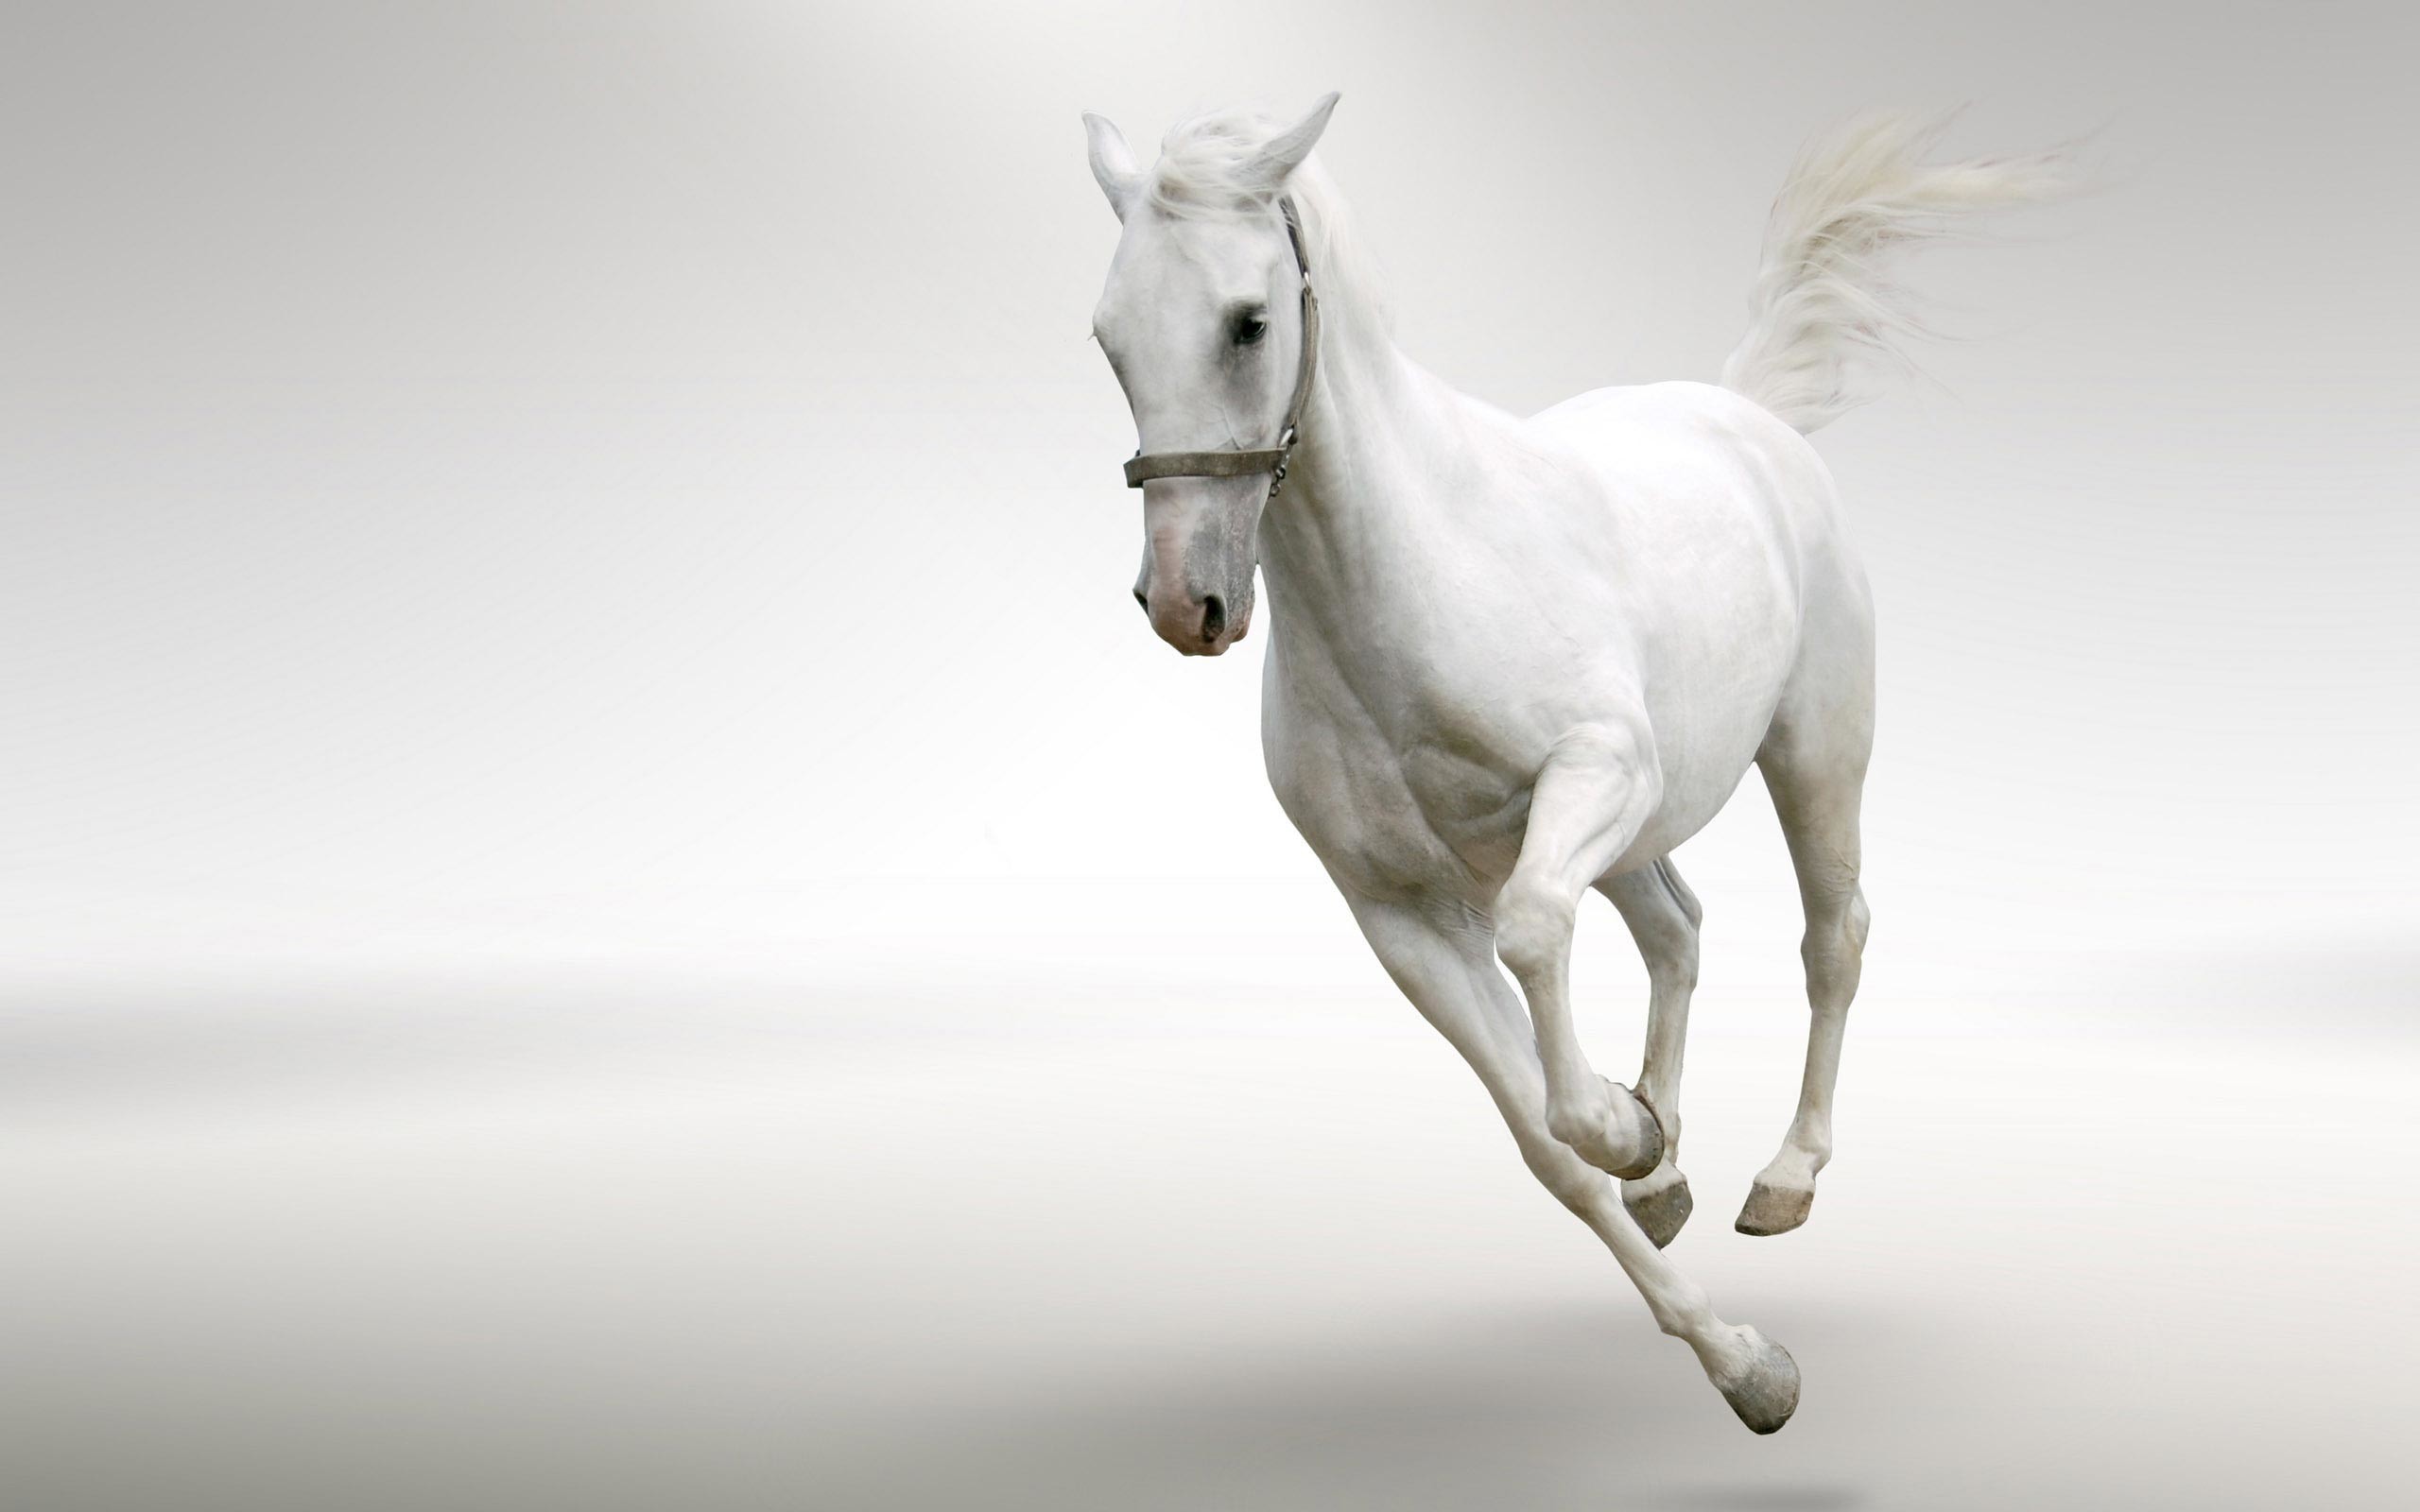 White Horses Running Data-src - White Horse Running Images Hd - 2560x1600  Wallpaper 